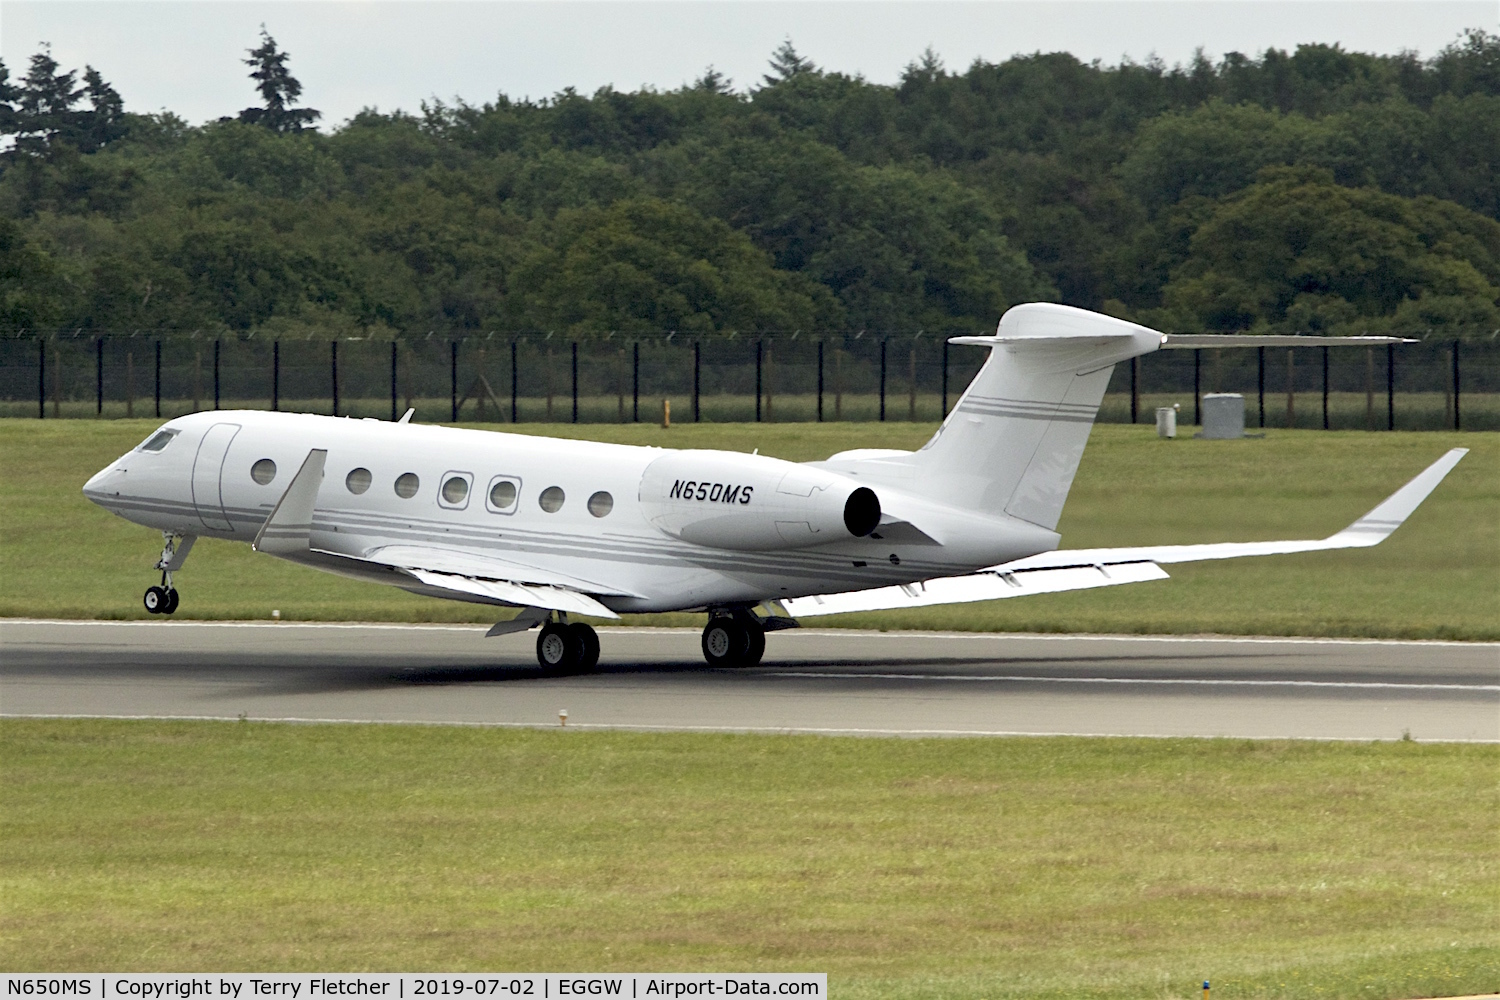 N650MS, 2013 Gulfstream Aerospace G650 (G-VI) C/N 6053, at Luton